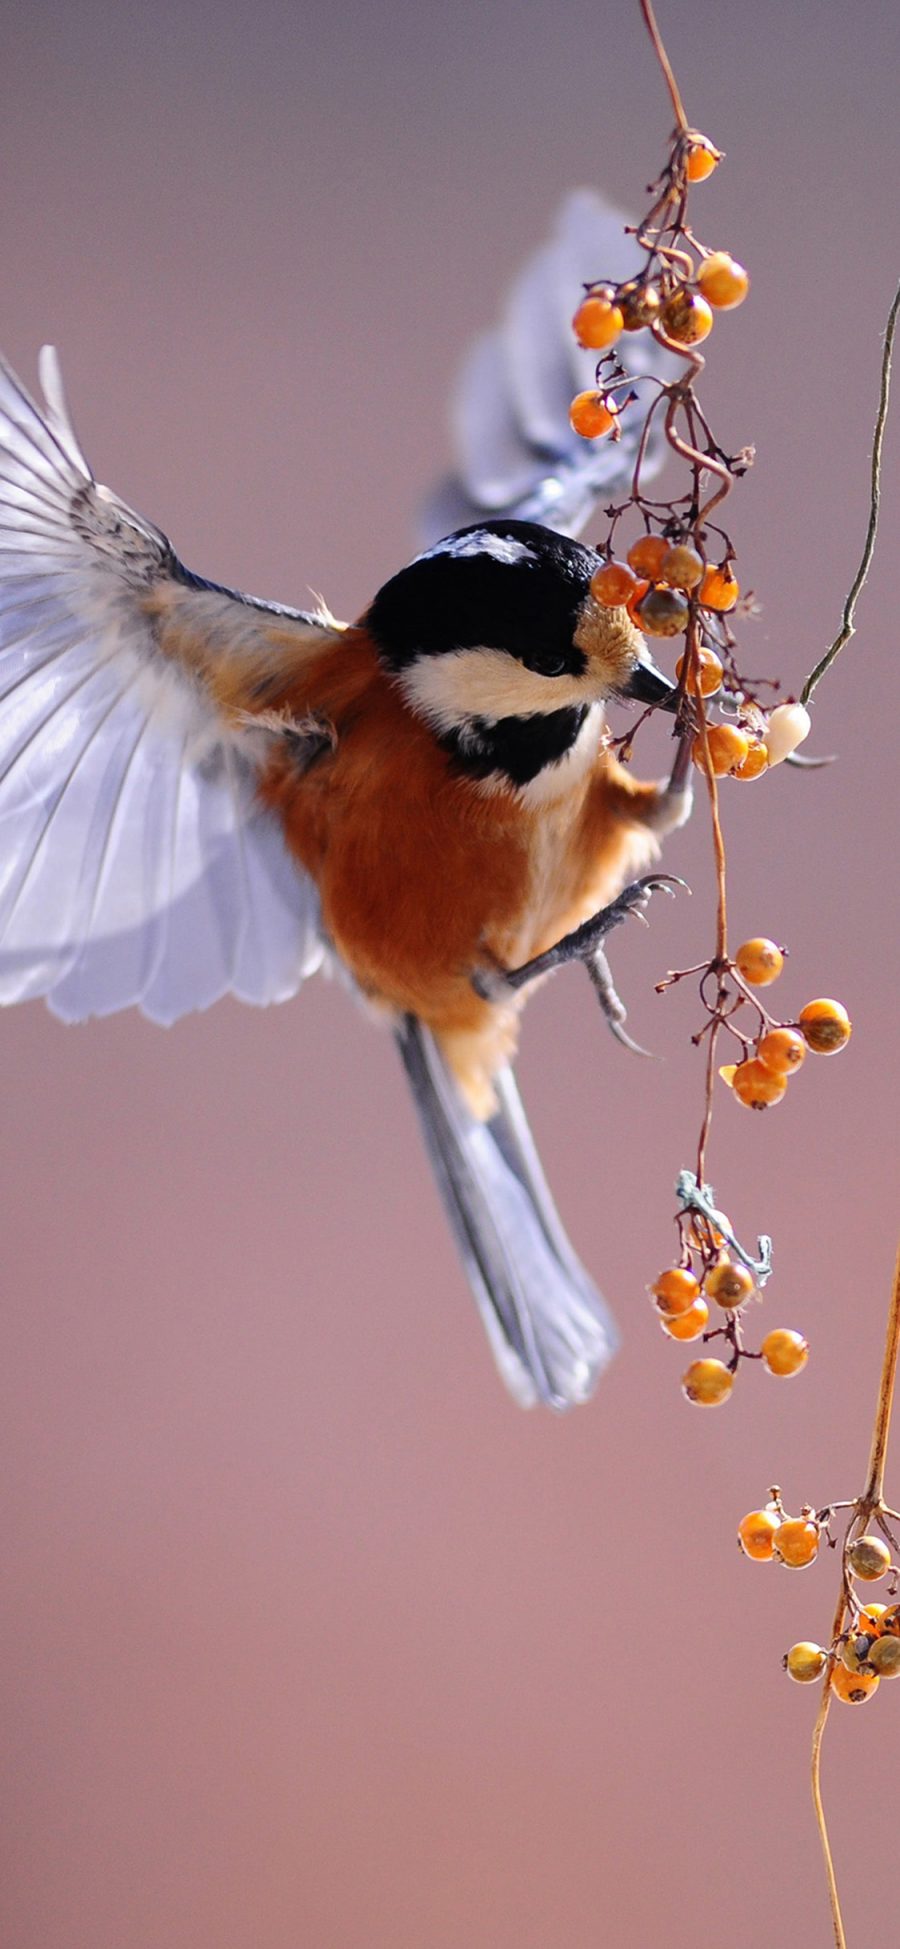 [2436×1125]觅食的小蜂鸟 鲜花 苹果手机壁纸图片